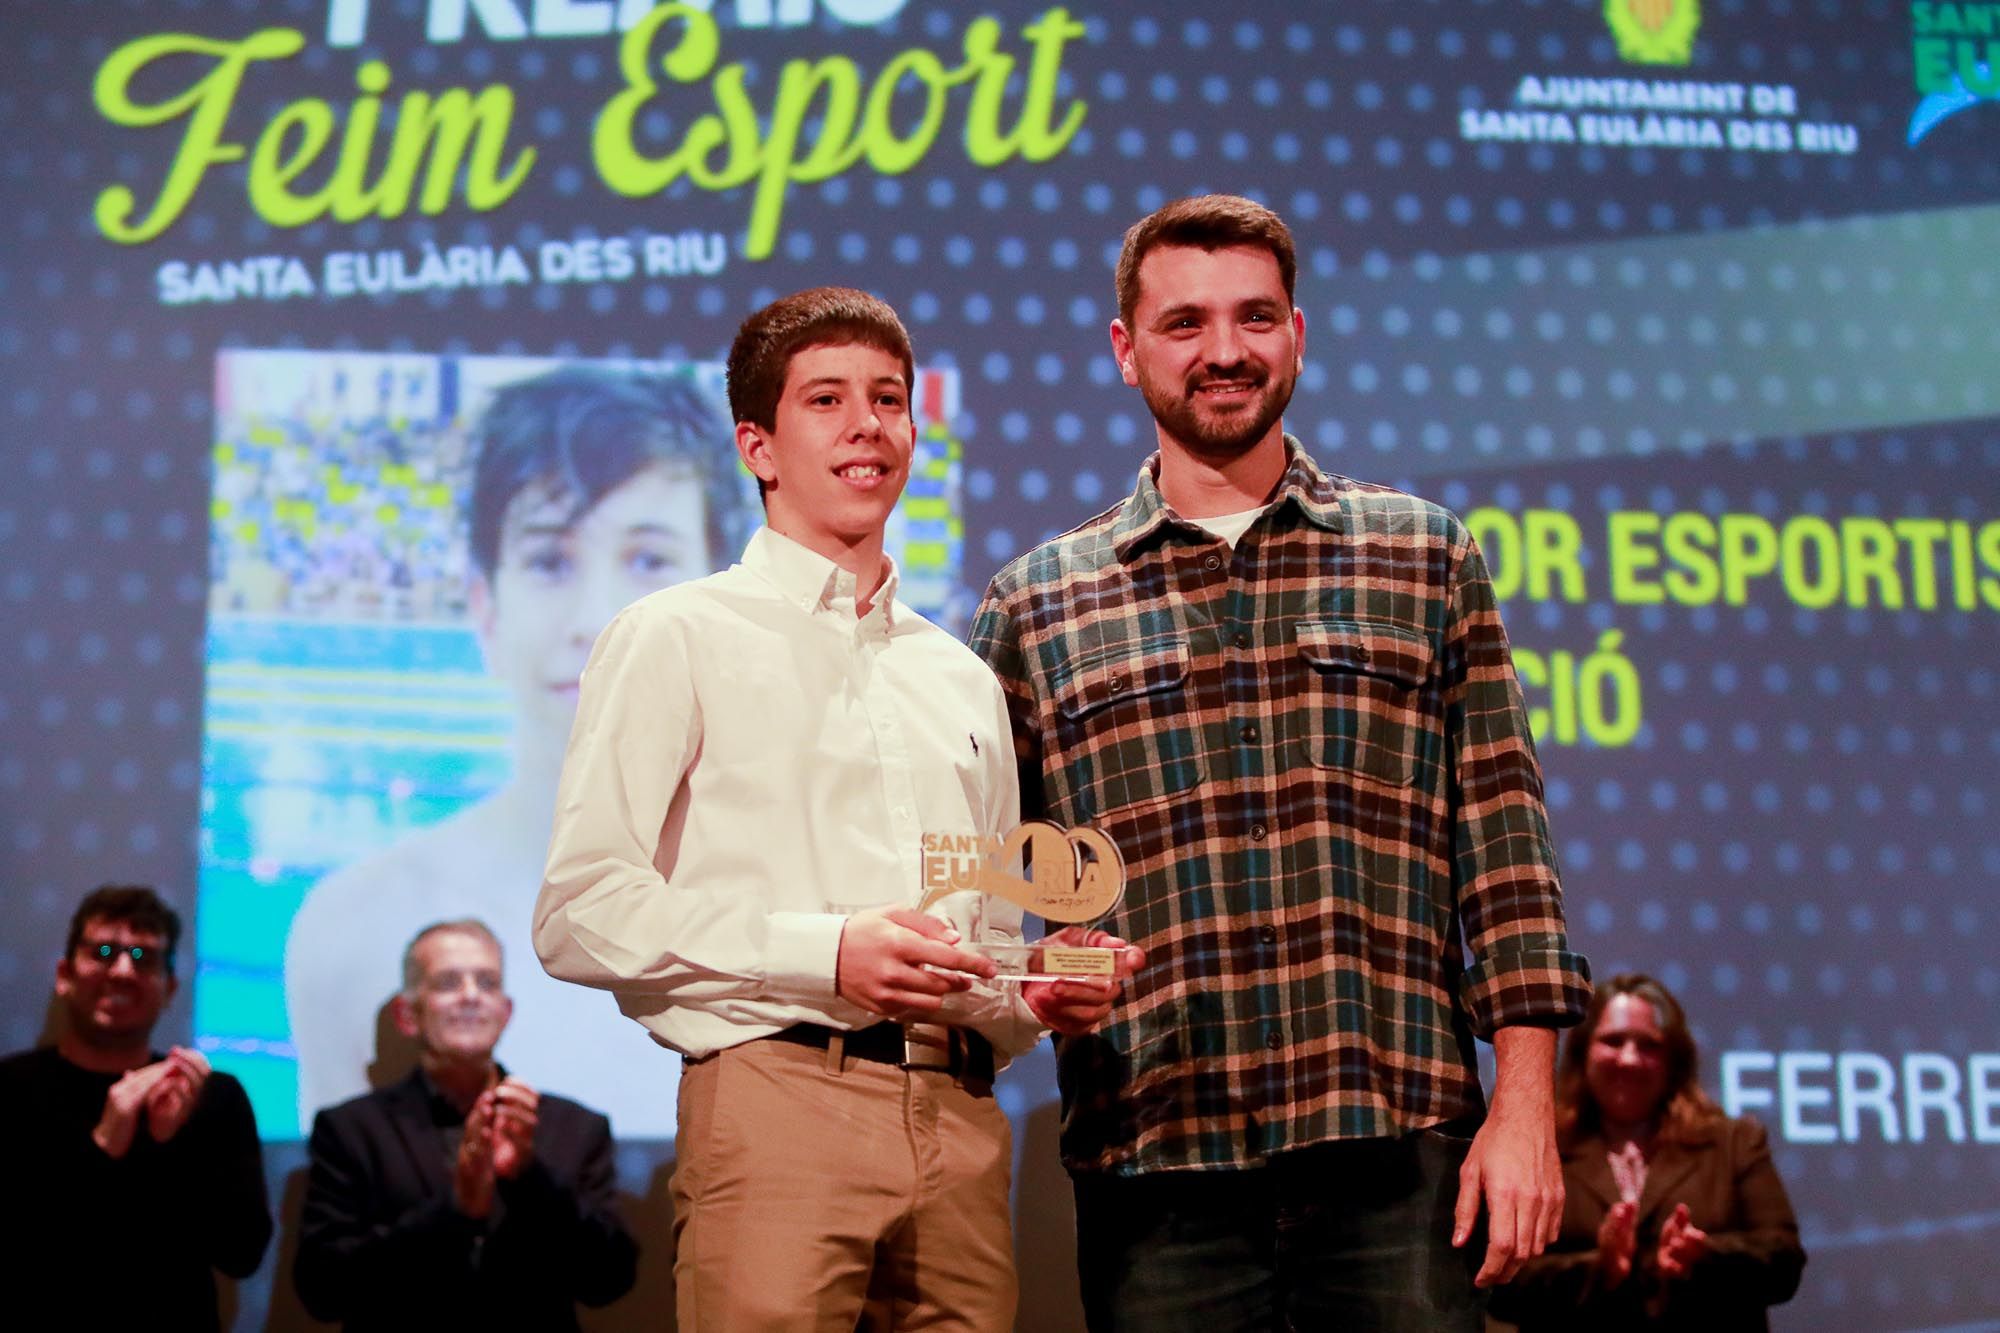 Galería de imágenes de la entrega de los Premios Feim Esport en Santa Eulària